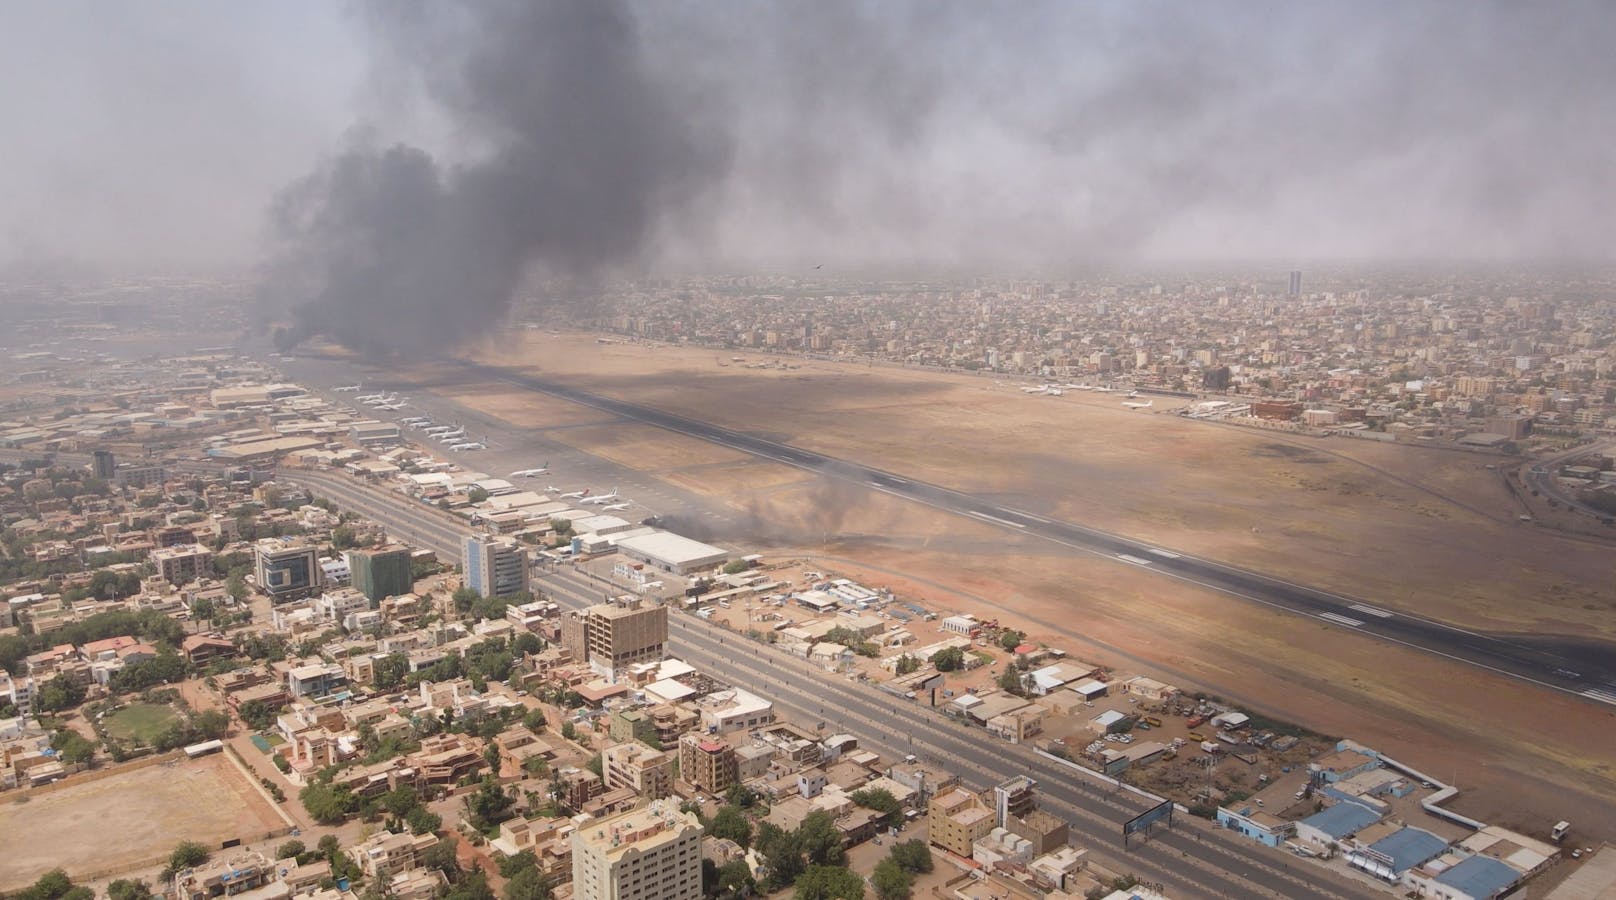 83 Tote und 1.100 Verletzte – Lage im Sudan eskaliert